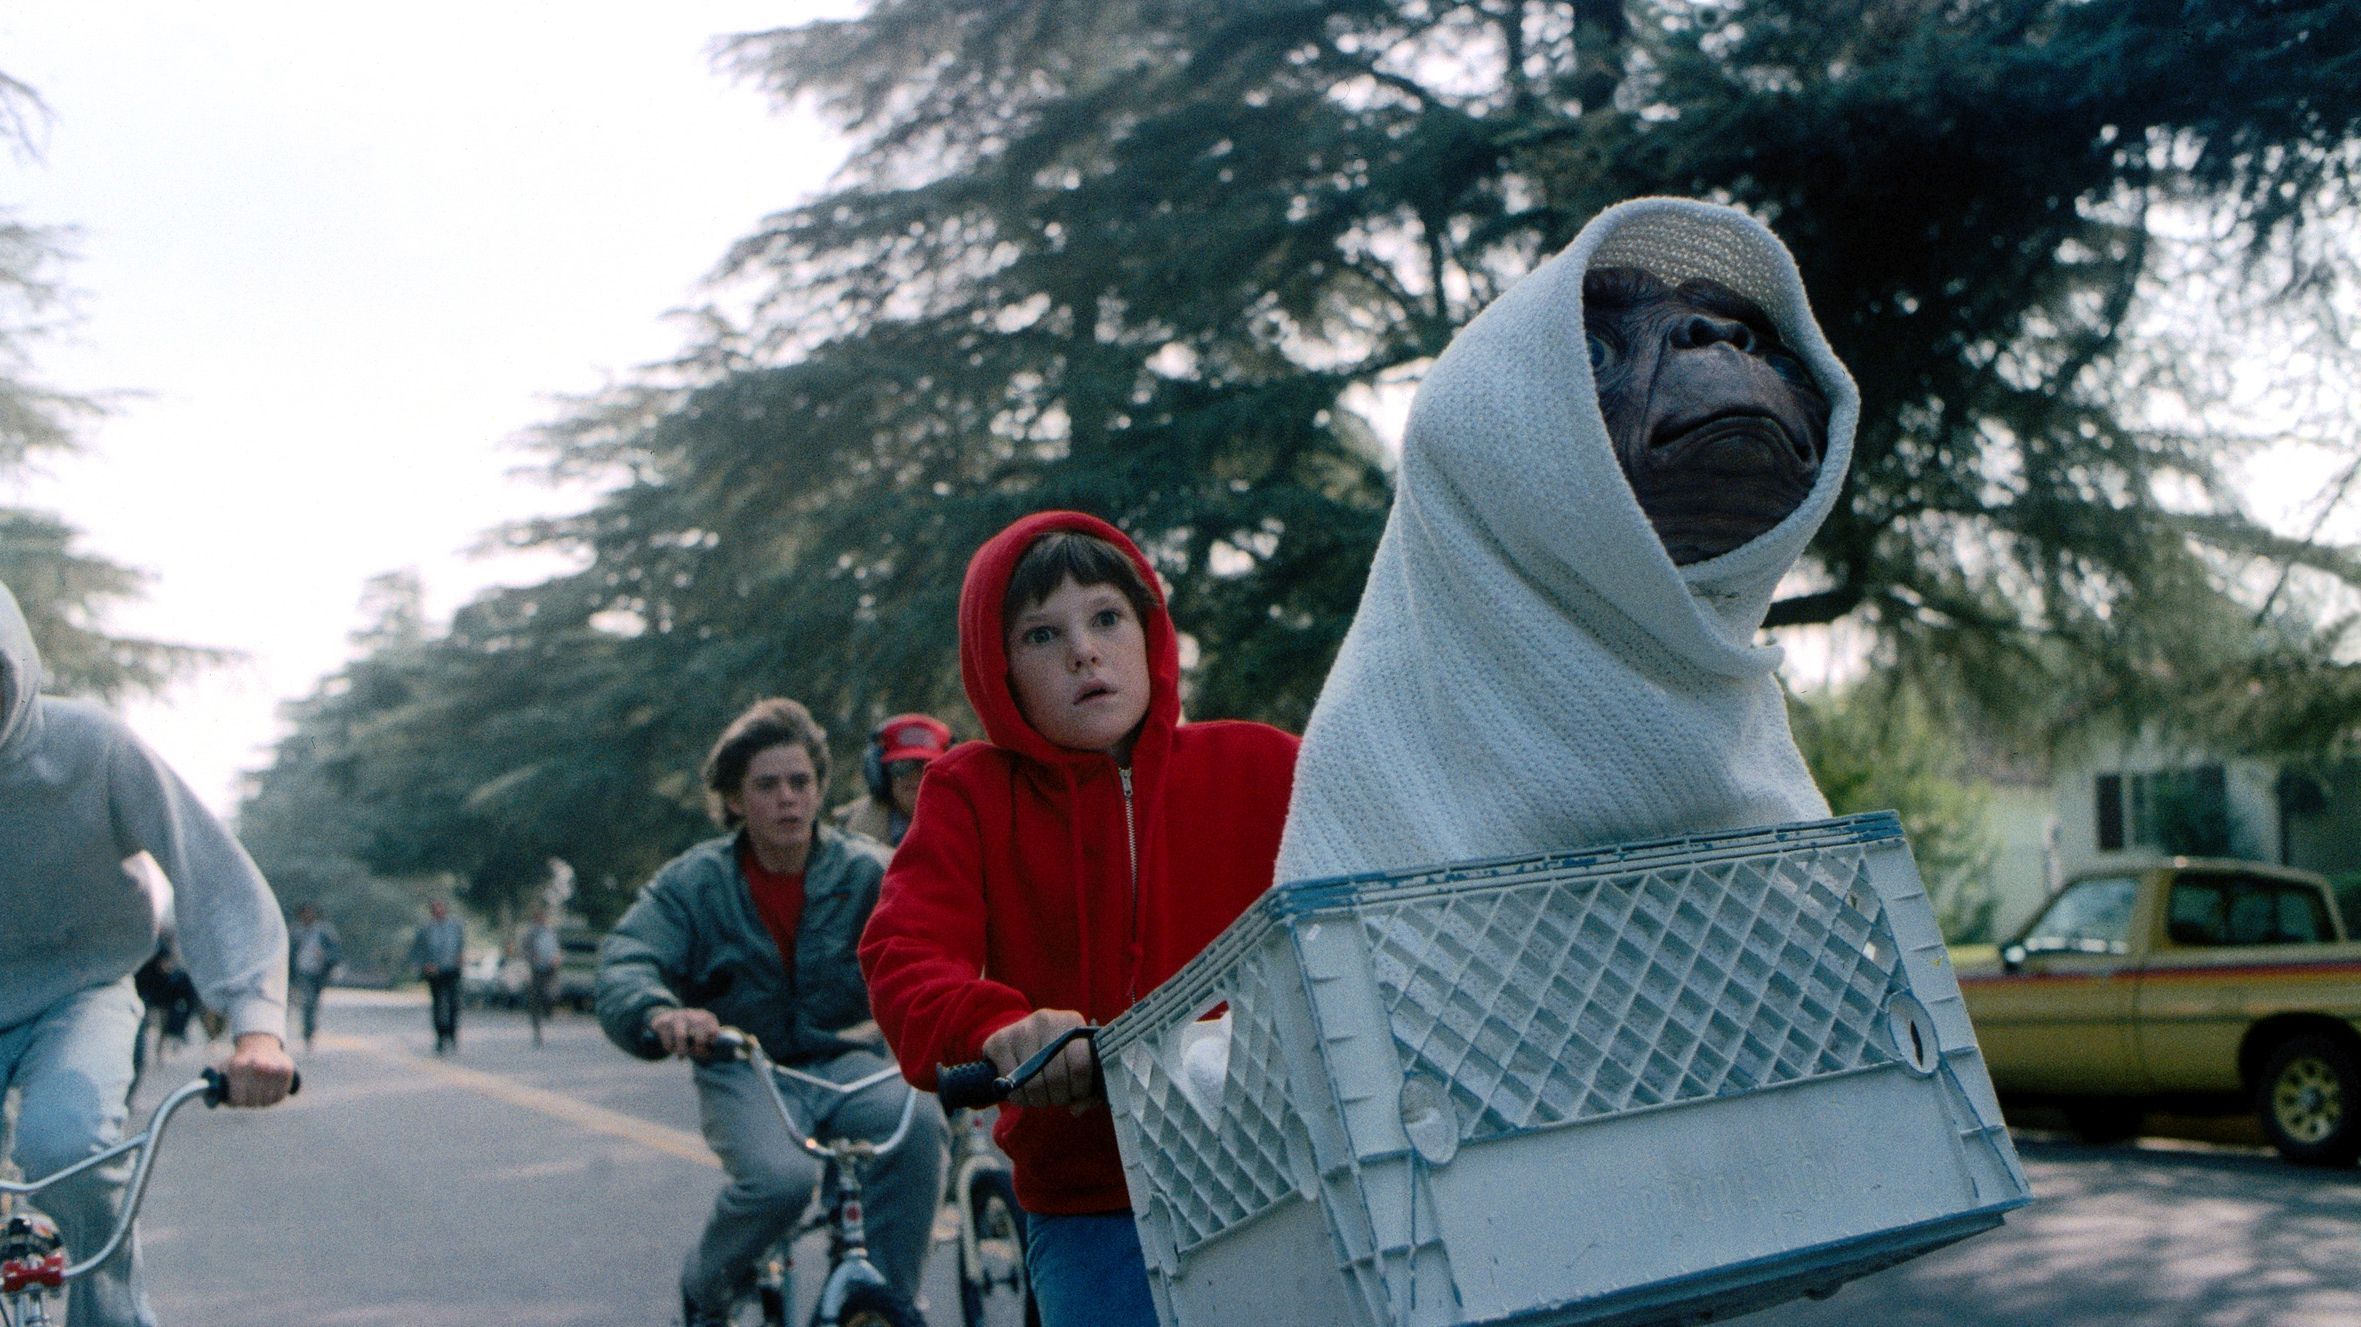 Ein junge in einem roten Kapuzenpullover fährt mit dem Rad und in seinem Korb sitzt ein in eine Decke gewickeltes Alien.